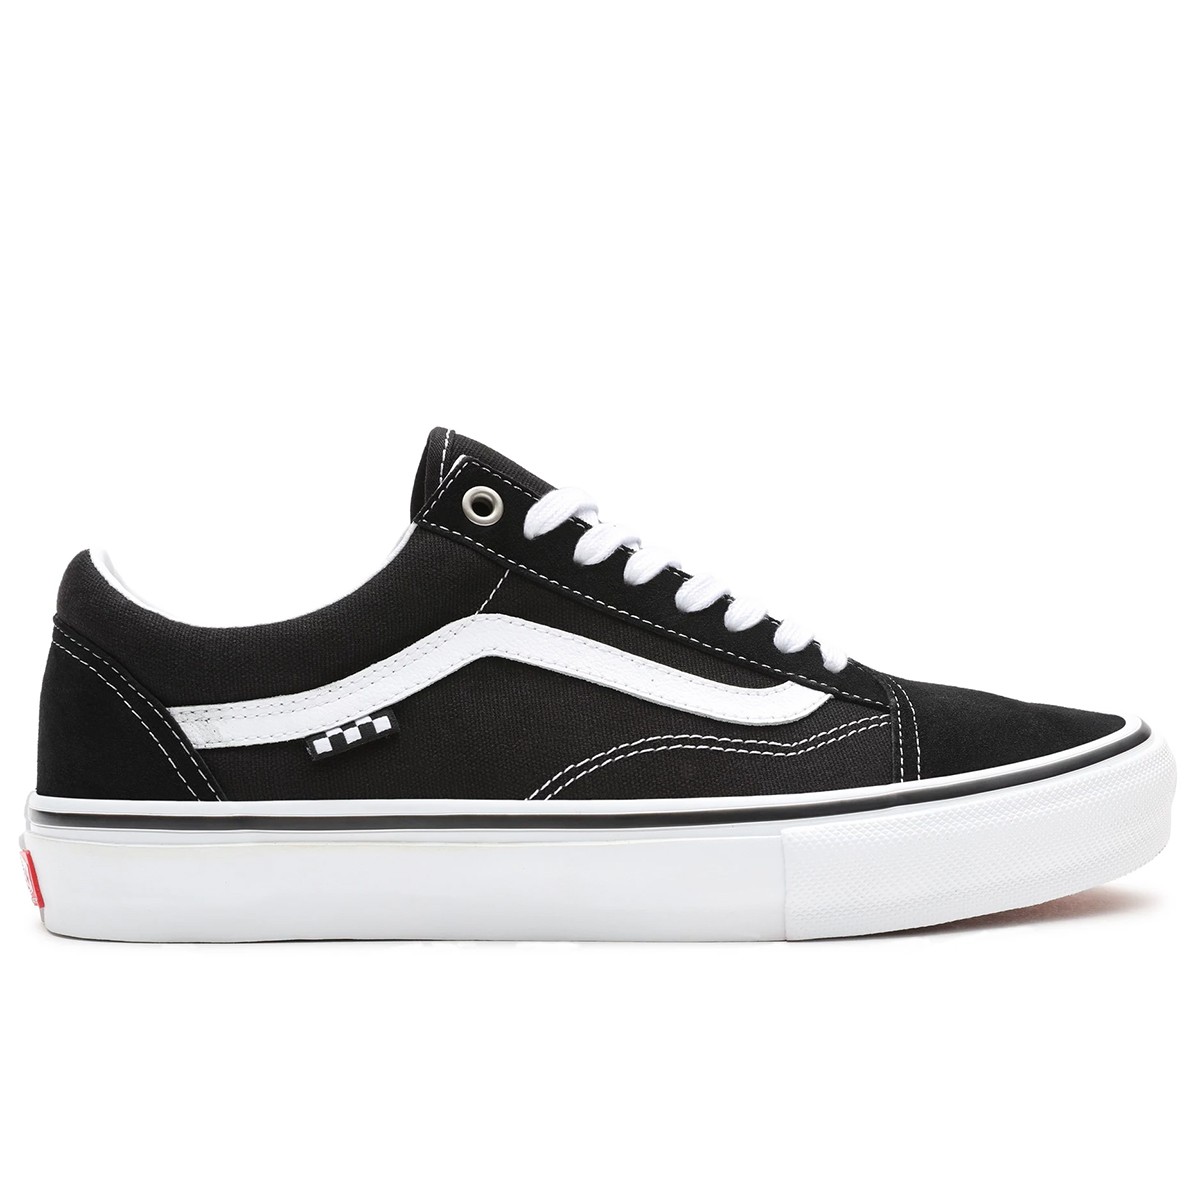 Vans Store | Skate shoes | Vans shop Europe: shop online Vans Footwear